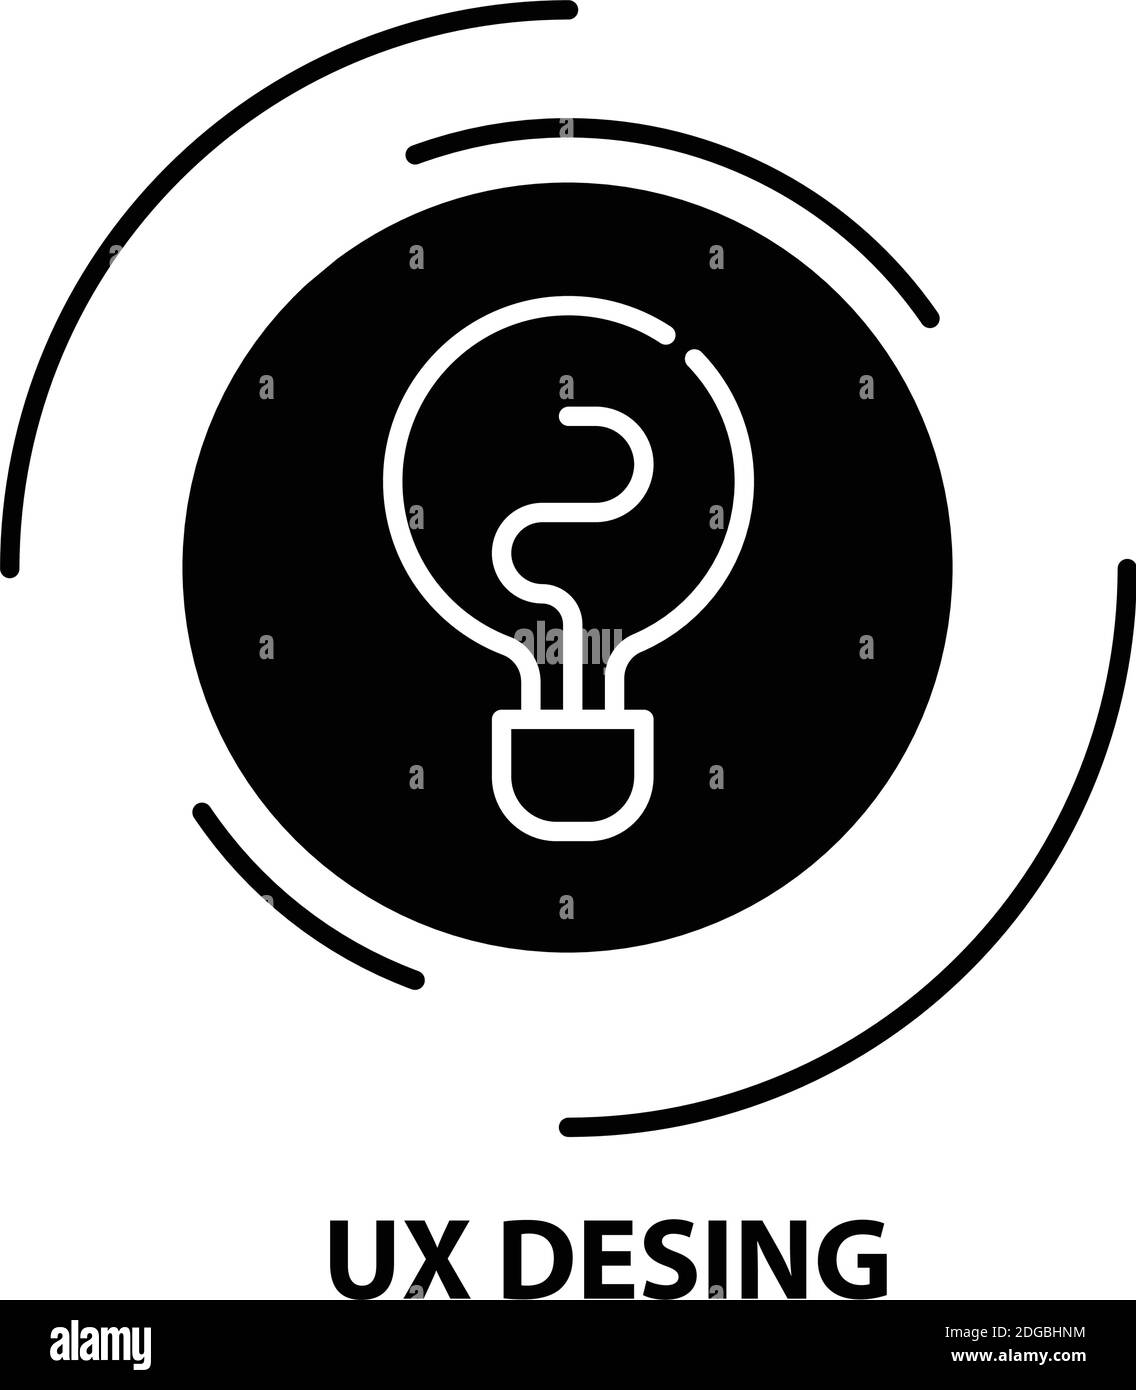 ux-Design-Symbol, schwarzes Vektorzeichen mit editierbaren Konturen, Konzeptdarstellung Stock Vektor